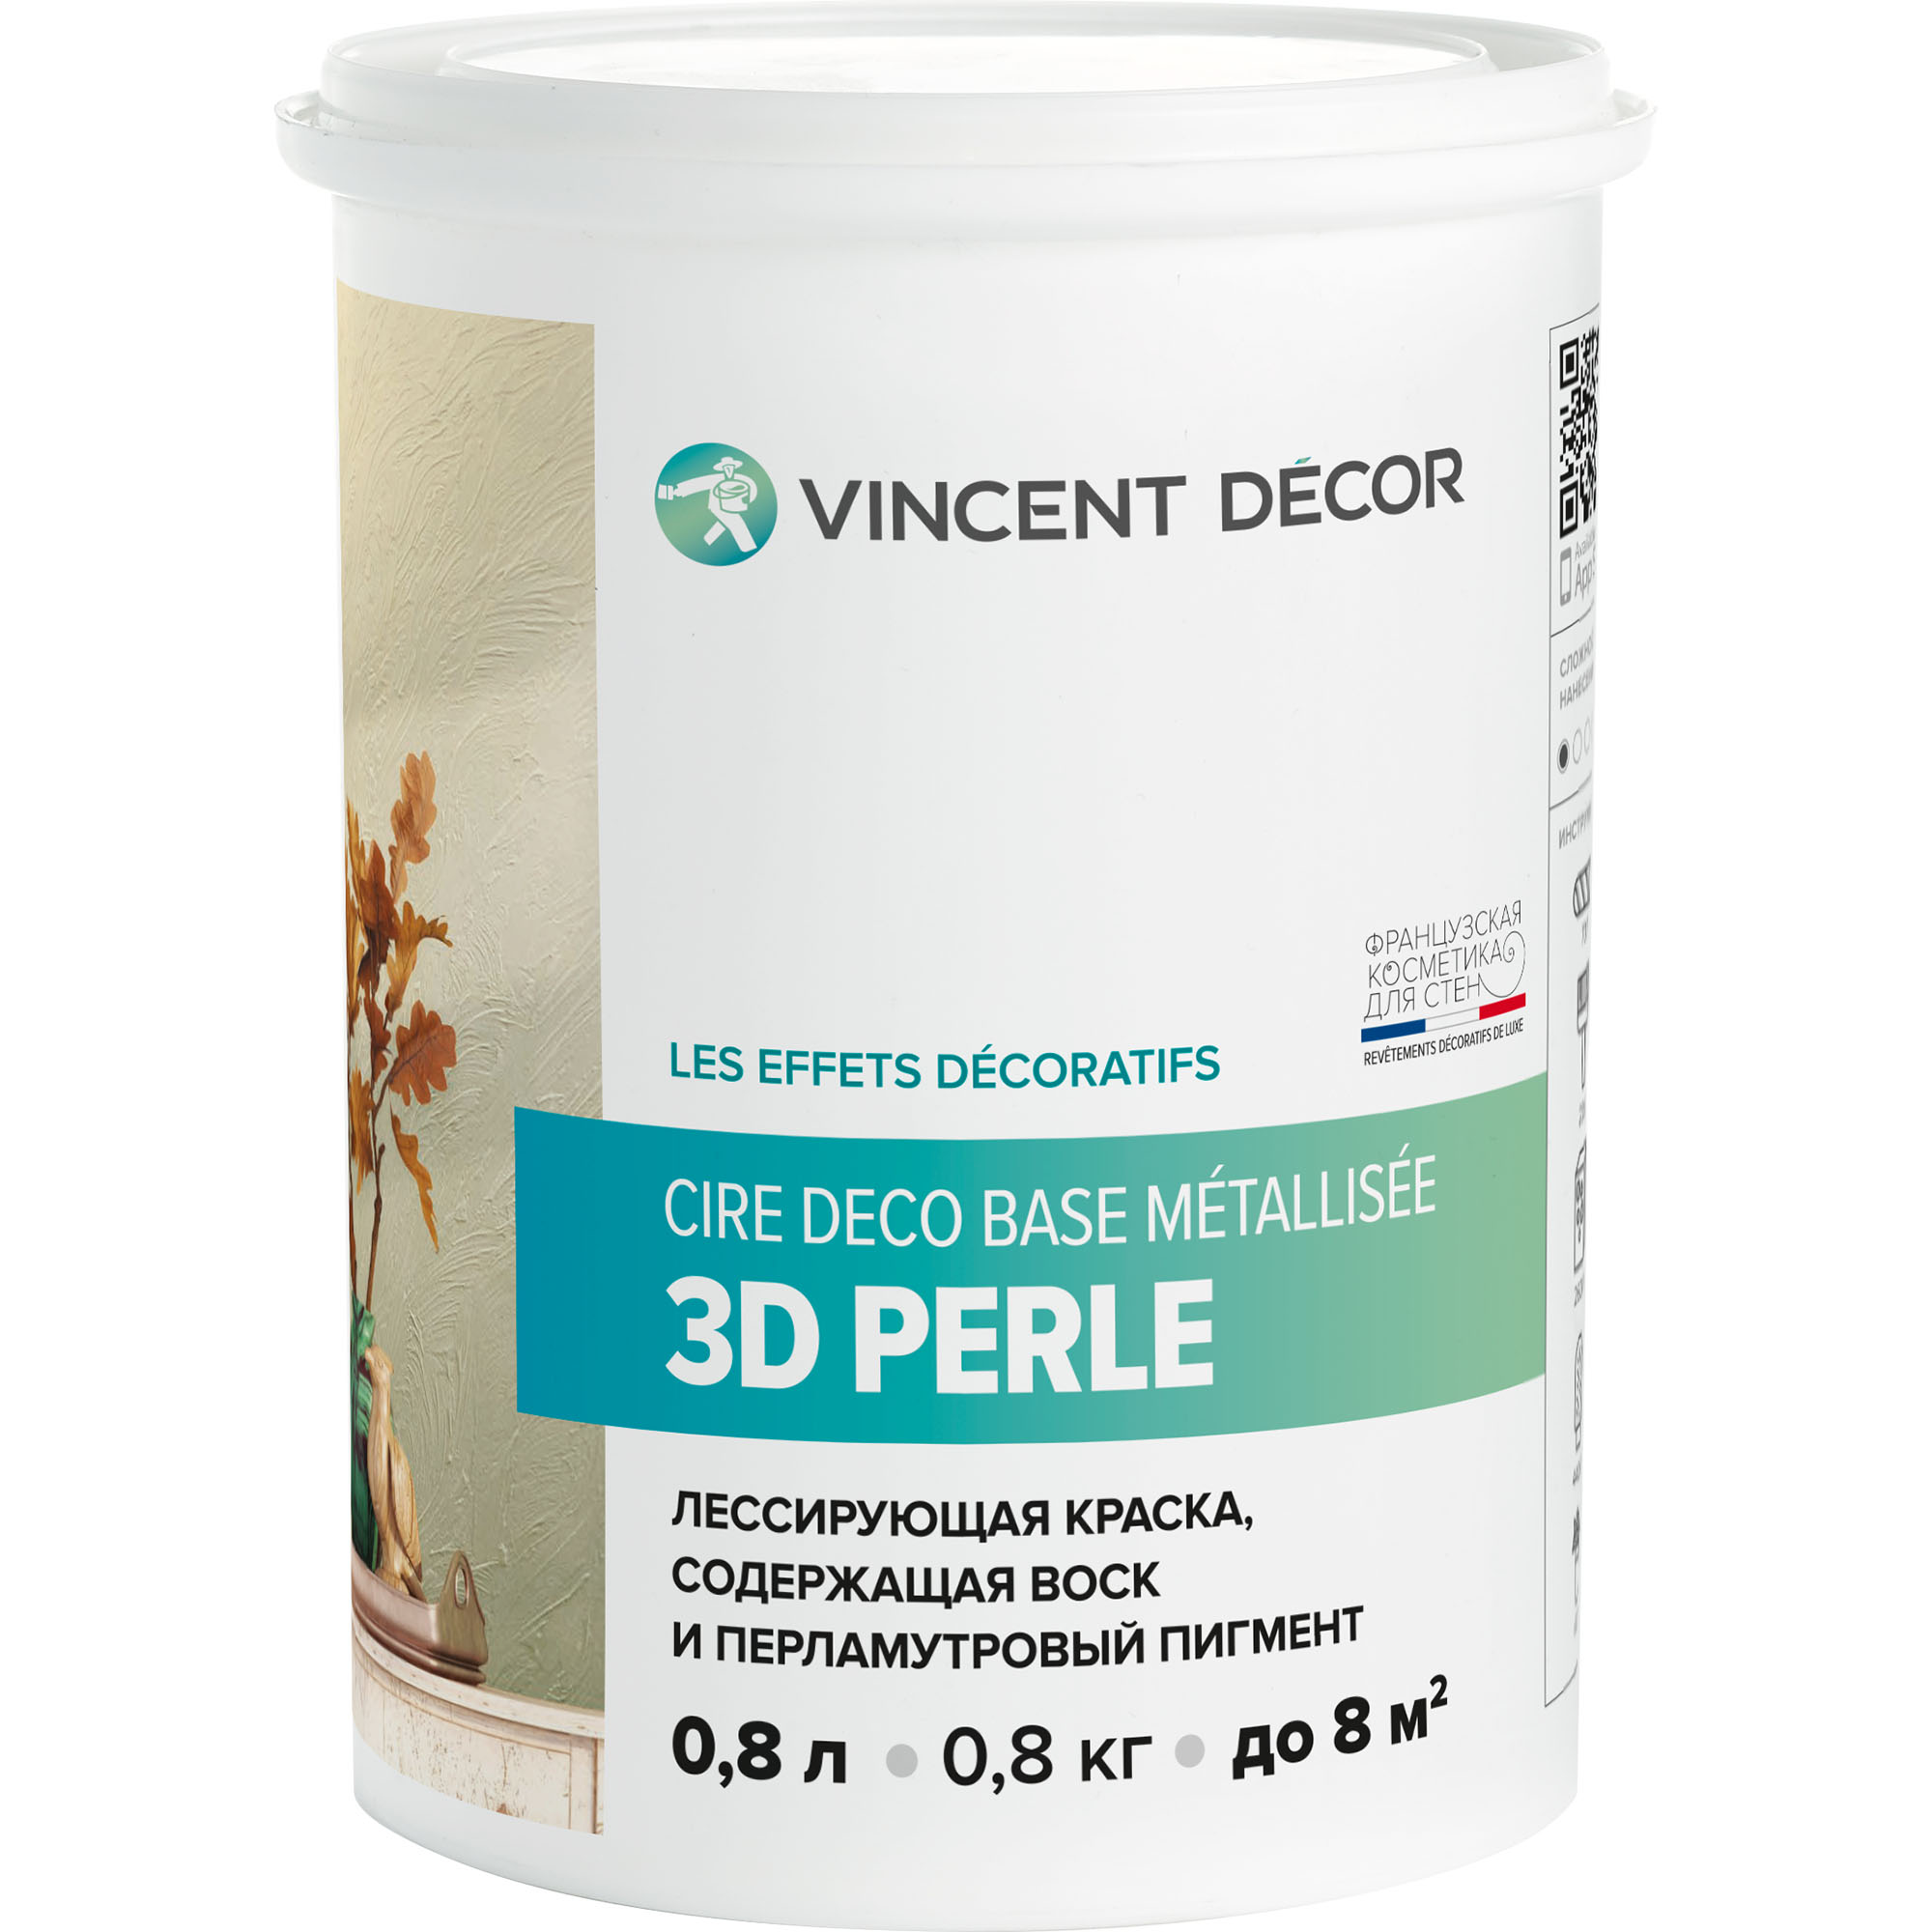 Краска лессирующая для декоративных покрытий Vincent Decor Cire deco base Metallisee 3D Perle золотистый перламутр 0,8 л грунтовка для декоративных покрытий vincent decor sous couсhe 2 5 л